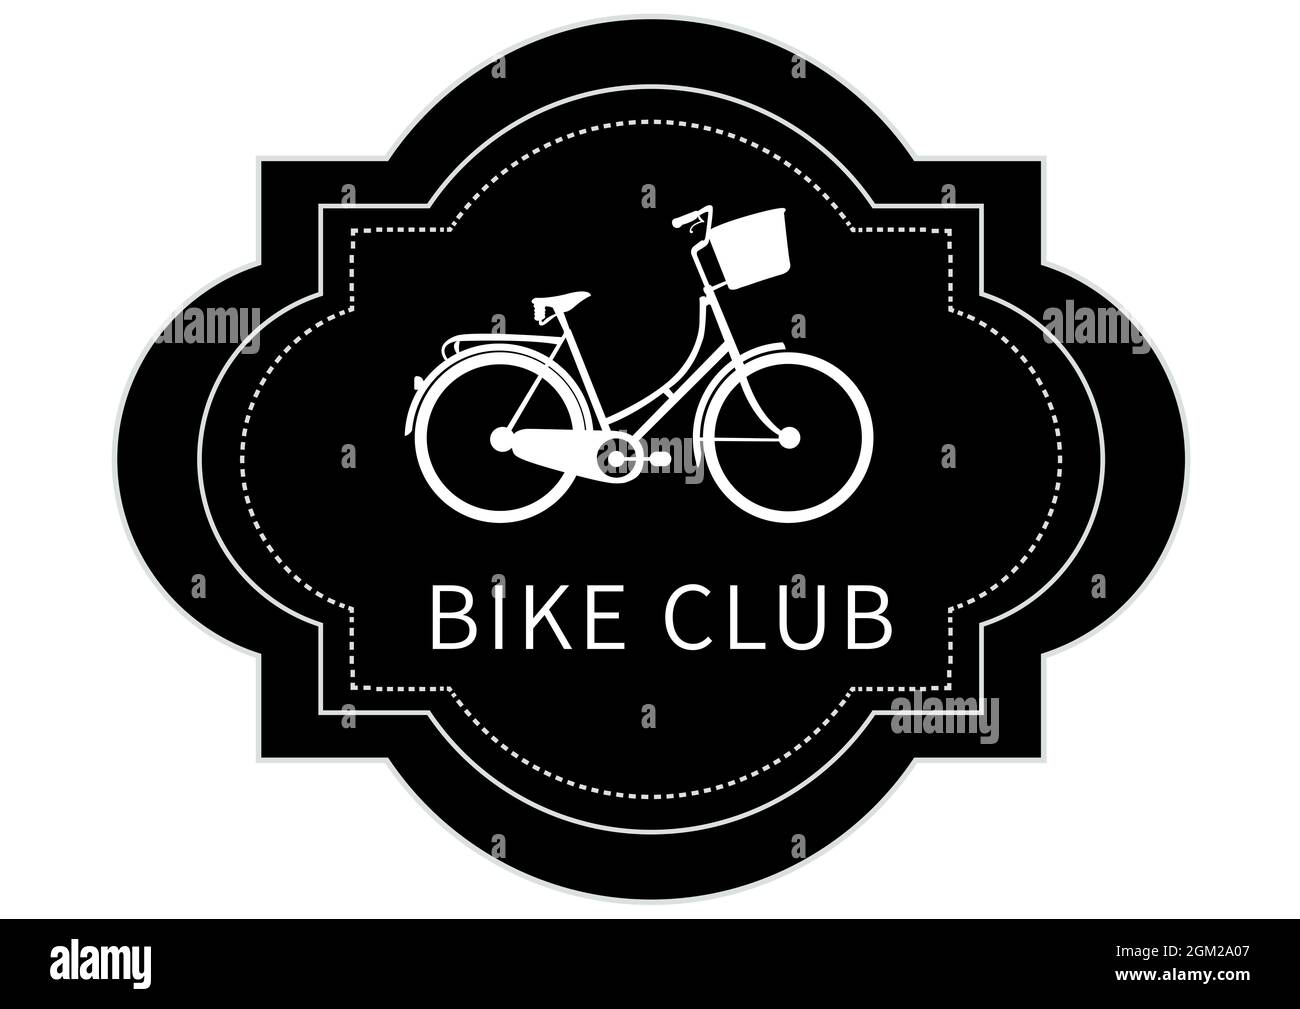 Texto del club de bicicletas con icono de bicicleta en una bandera negra abstracta sobre fondo blanco Foto de stock